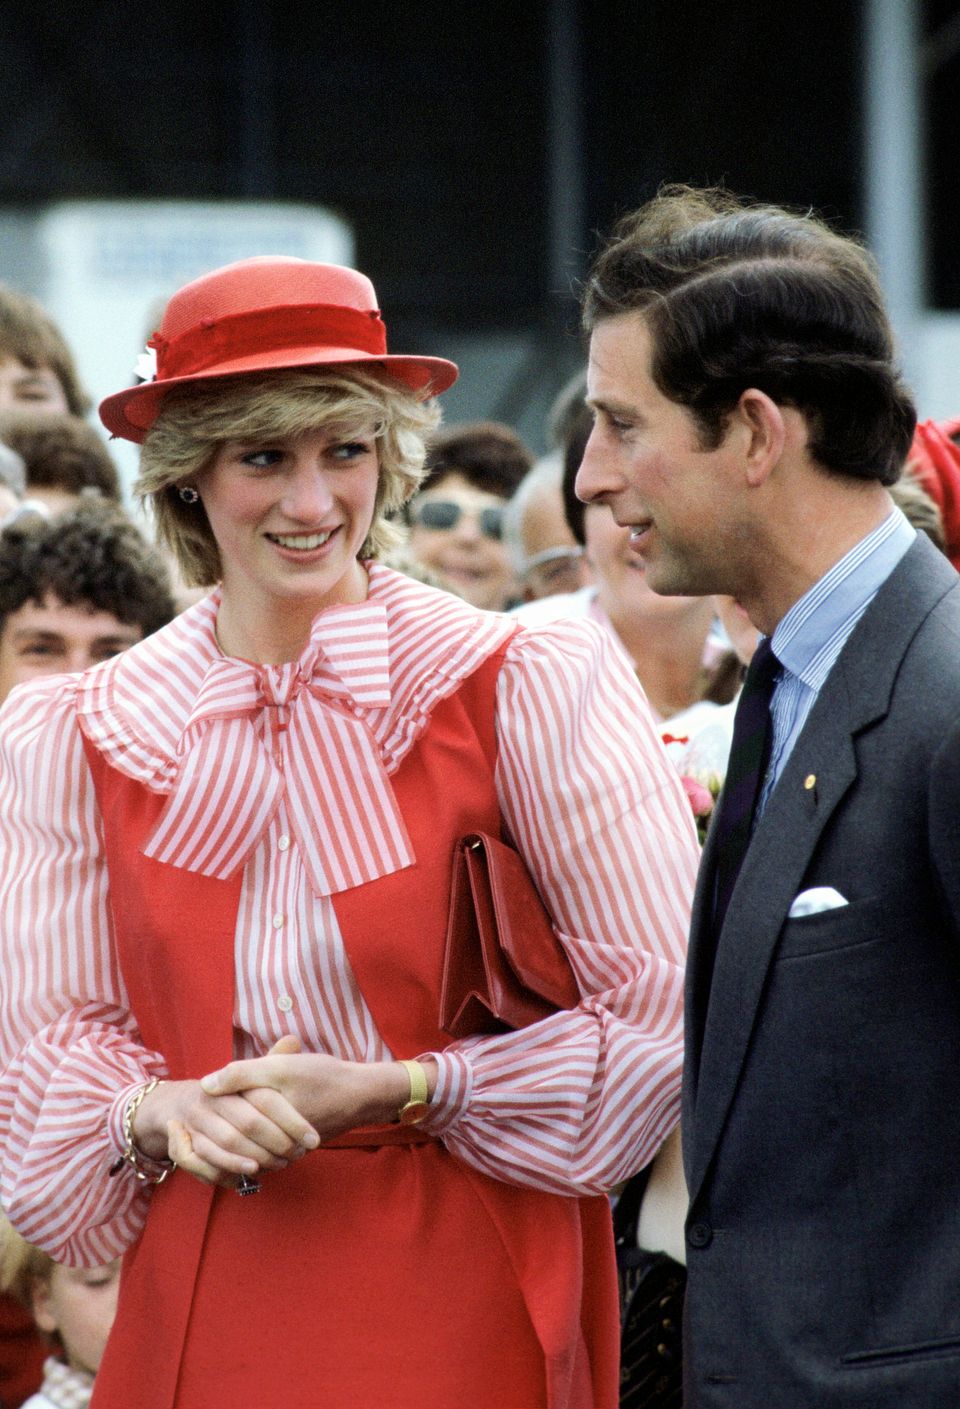 Princess Diana Was Always A Fashion Icon, As These Striking Photos Show ...